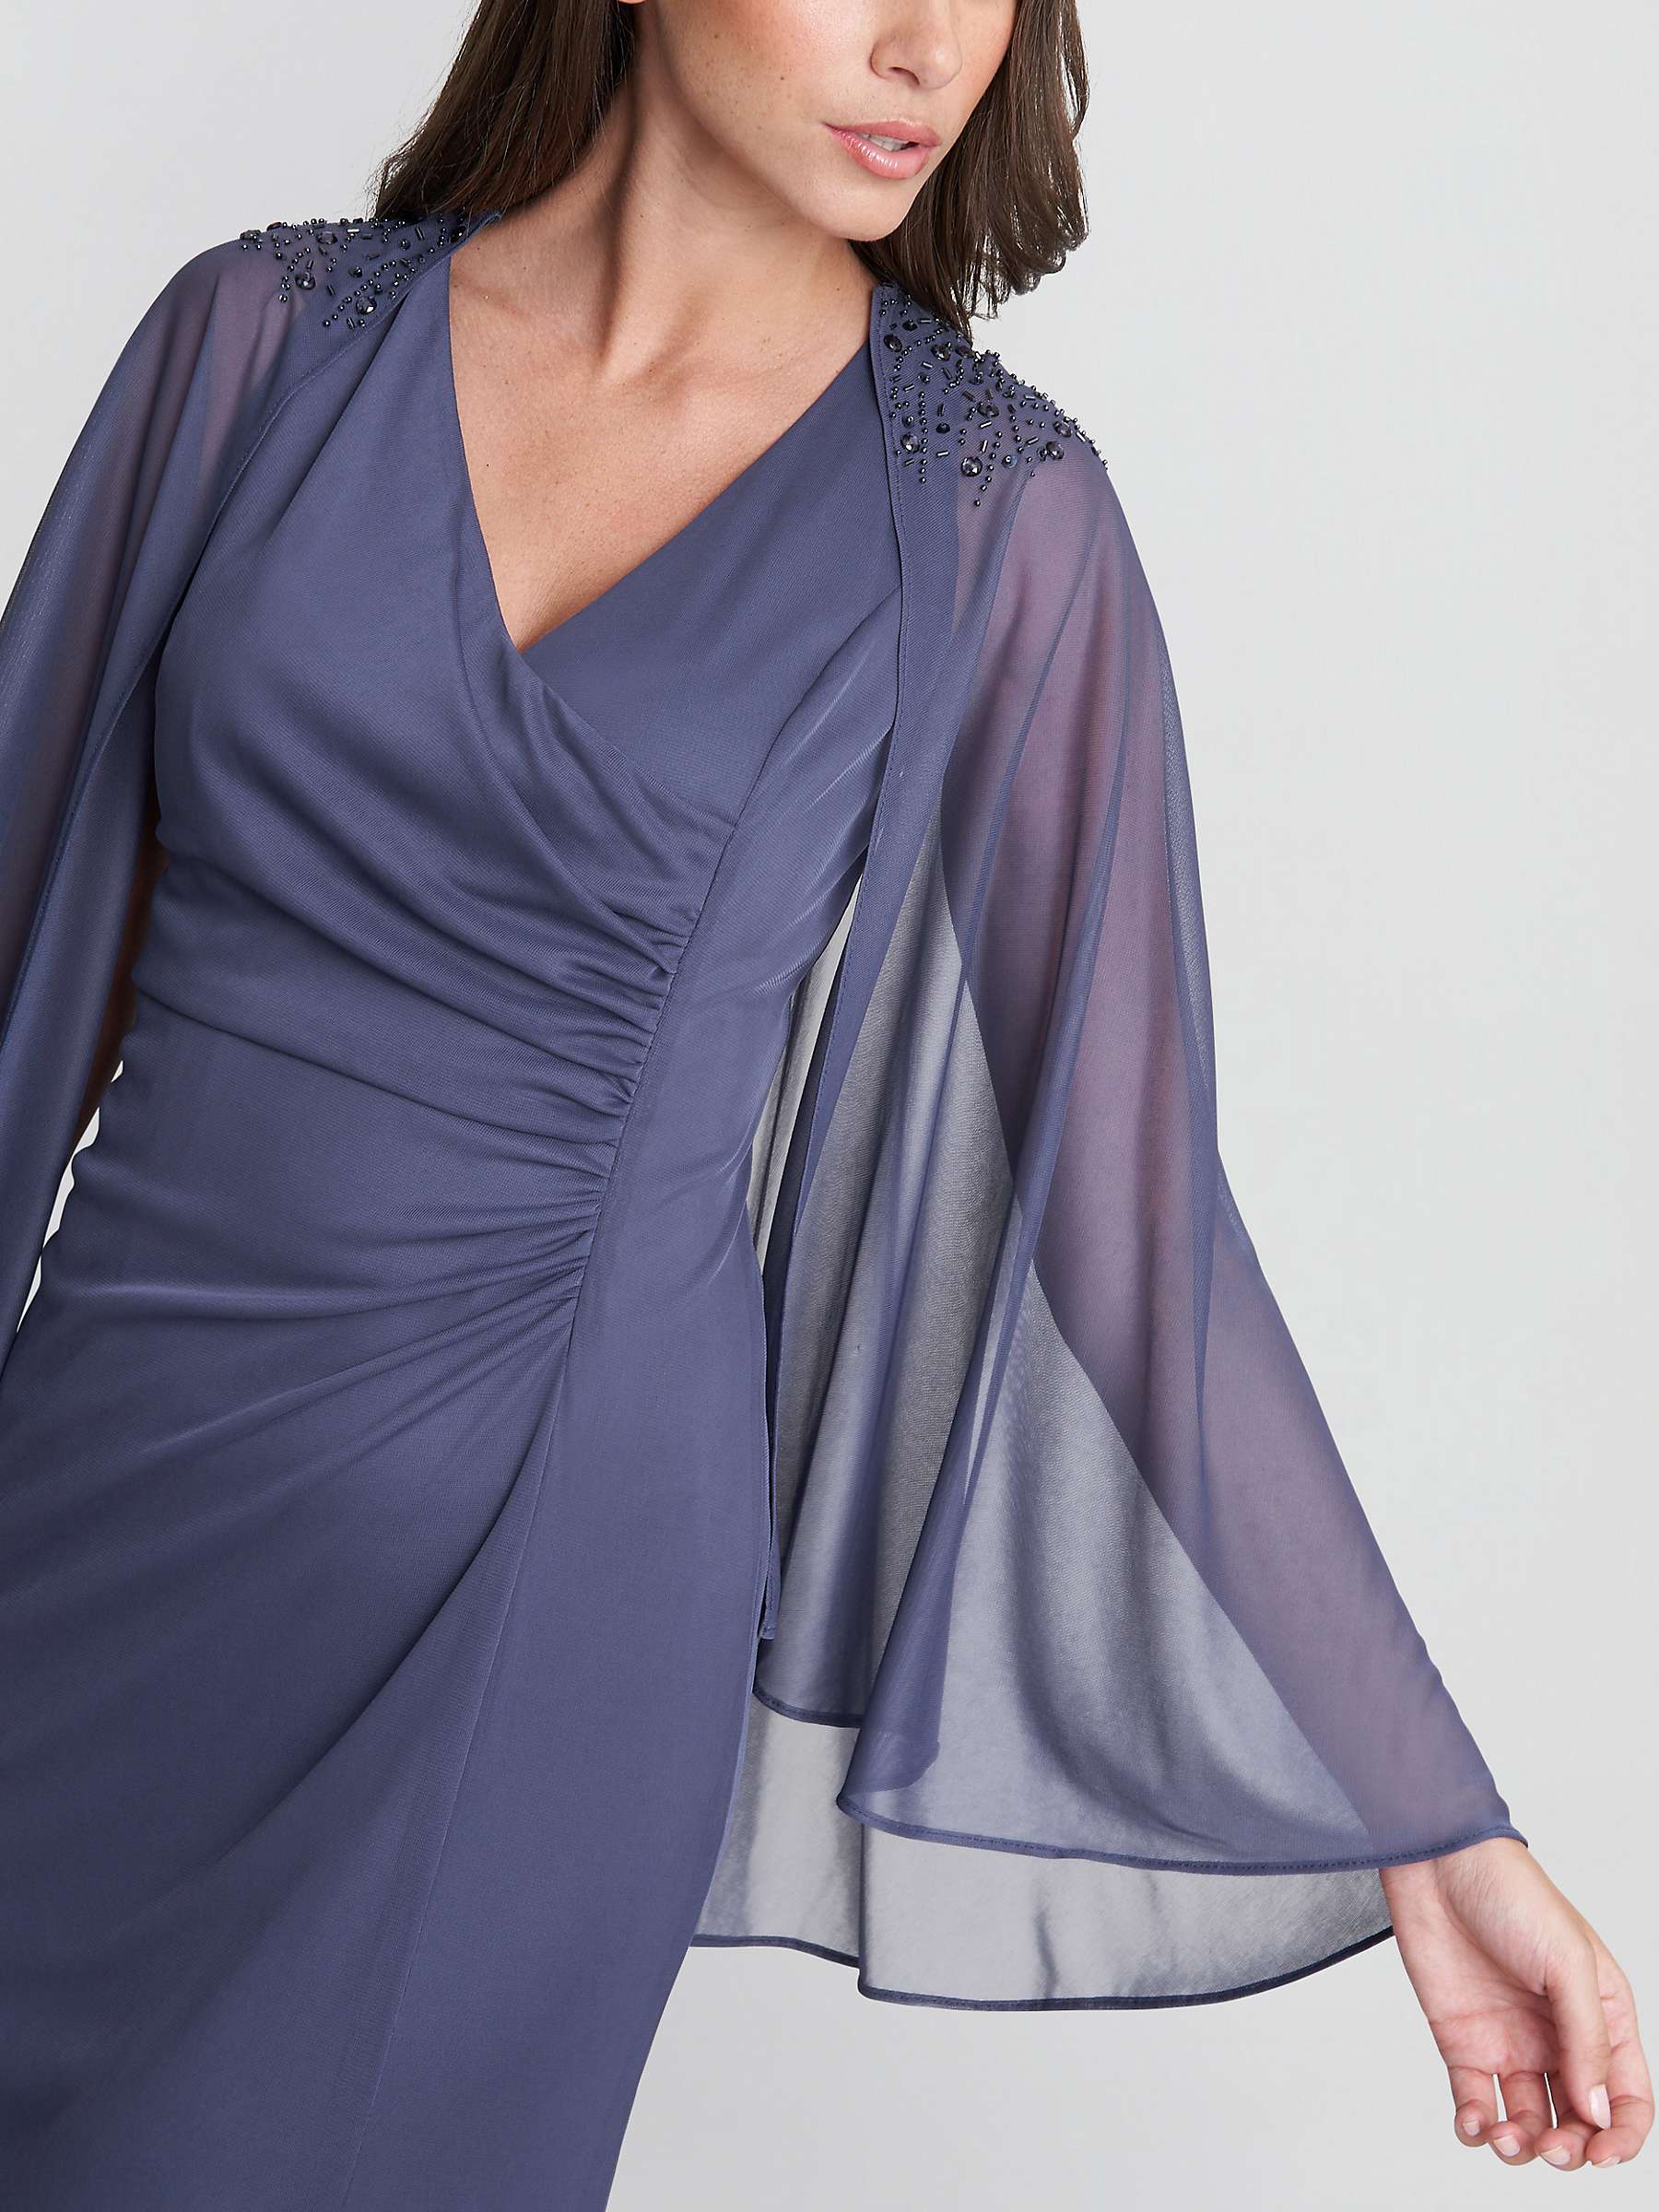 Buy Gina Bacconi Estefany V-Neck Cape Maxi Dress, Violet Online at johnlewis.com